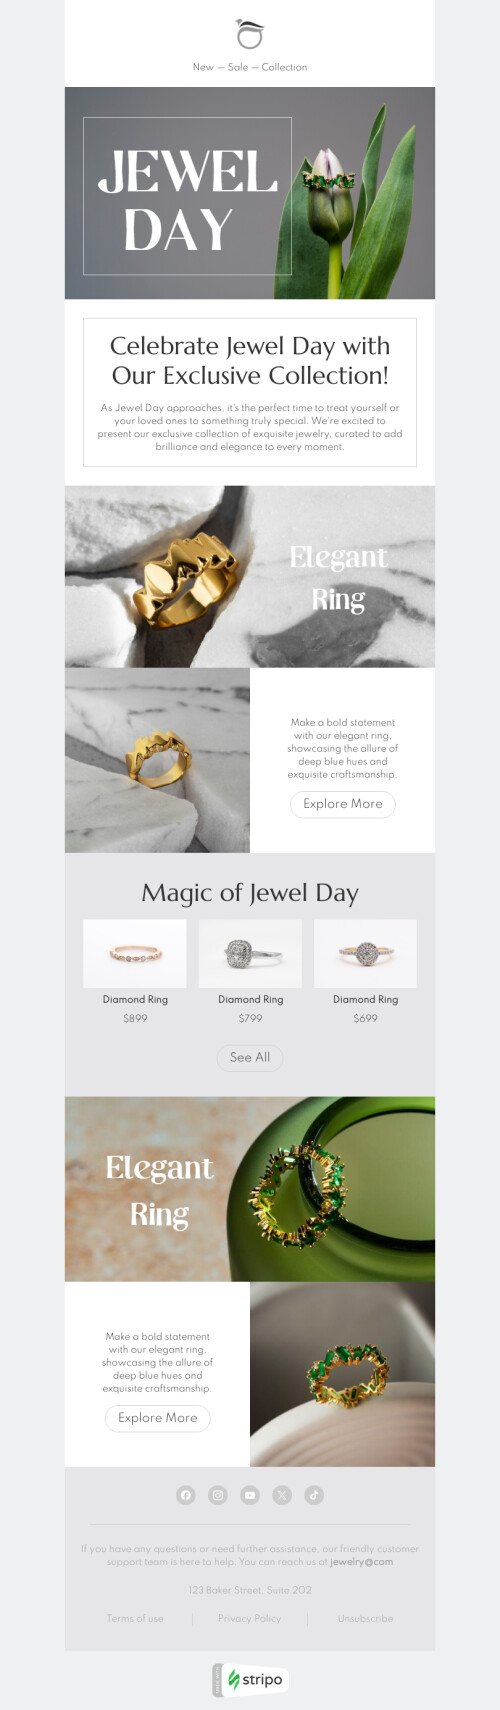 Plantilla de correo electrónico «Anillo elegante​» de Día de la joya para la industria de joyería Vista de móvil